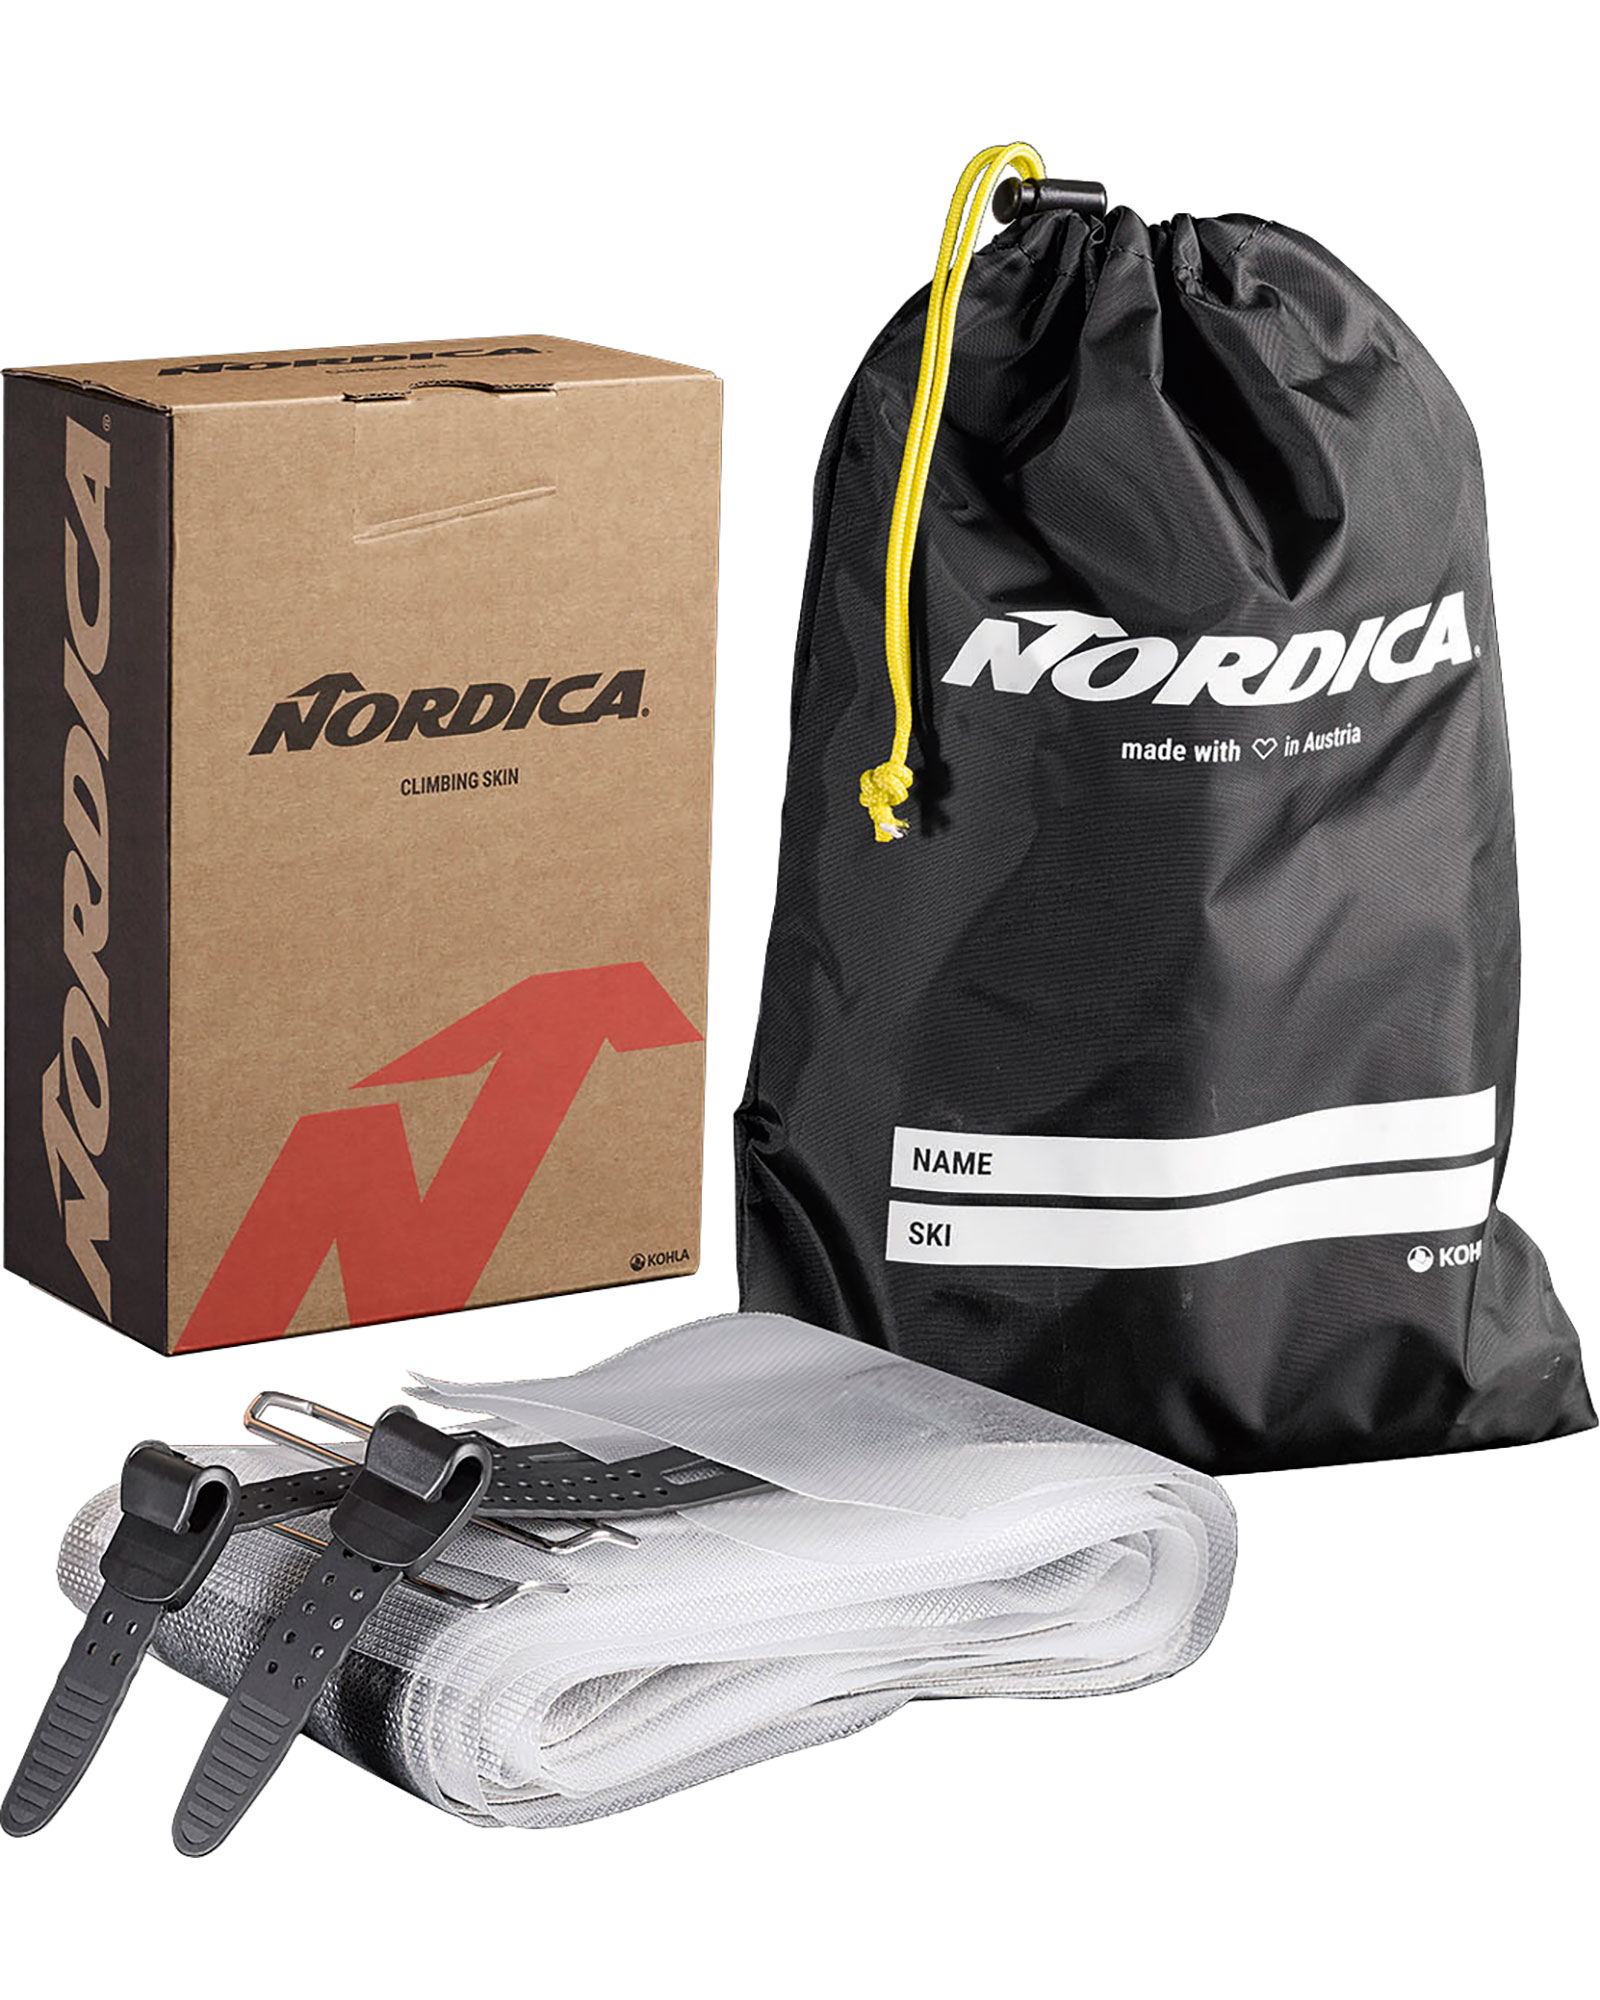 Nordica Enforcer / Santa Ana 88 Skins